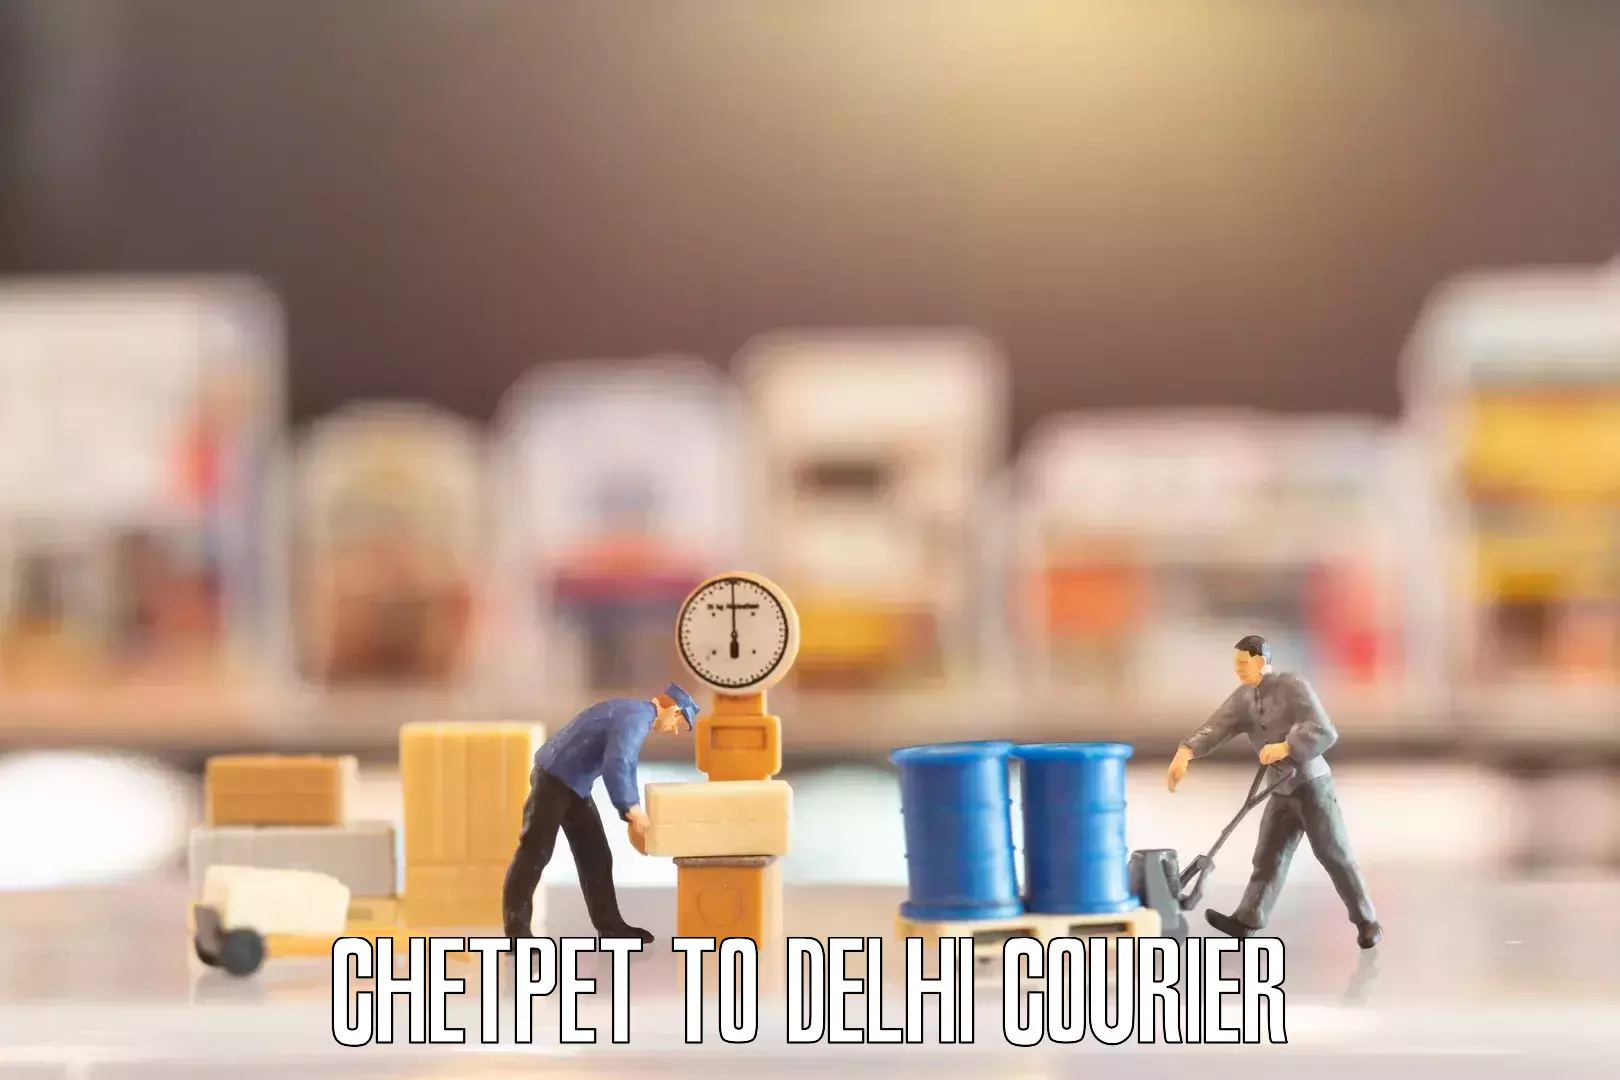 Expert goods movers Chetpet to Delhi